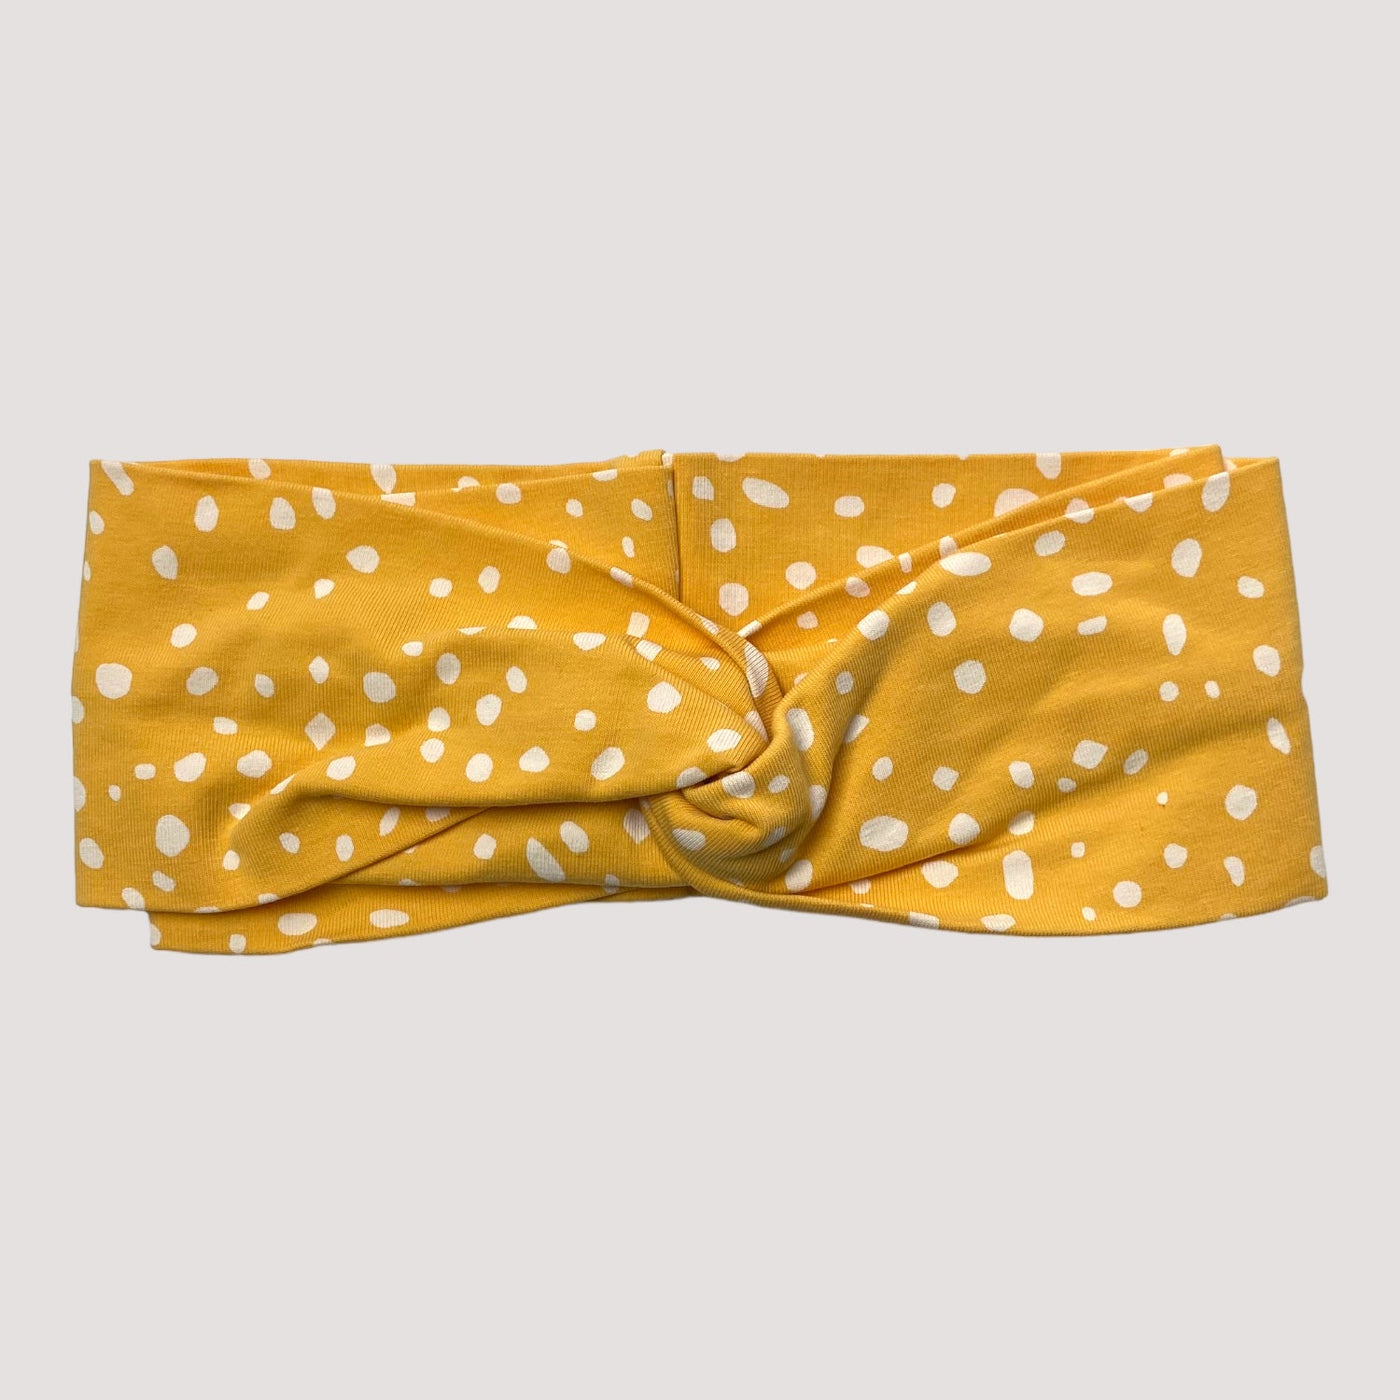 Kaiko knot headband, yellow dots | 48/50cm